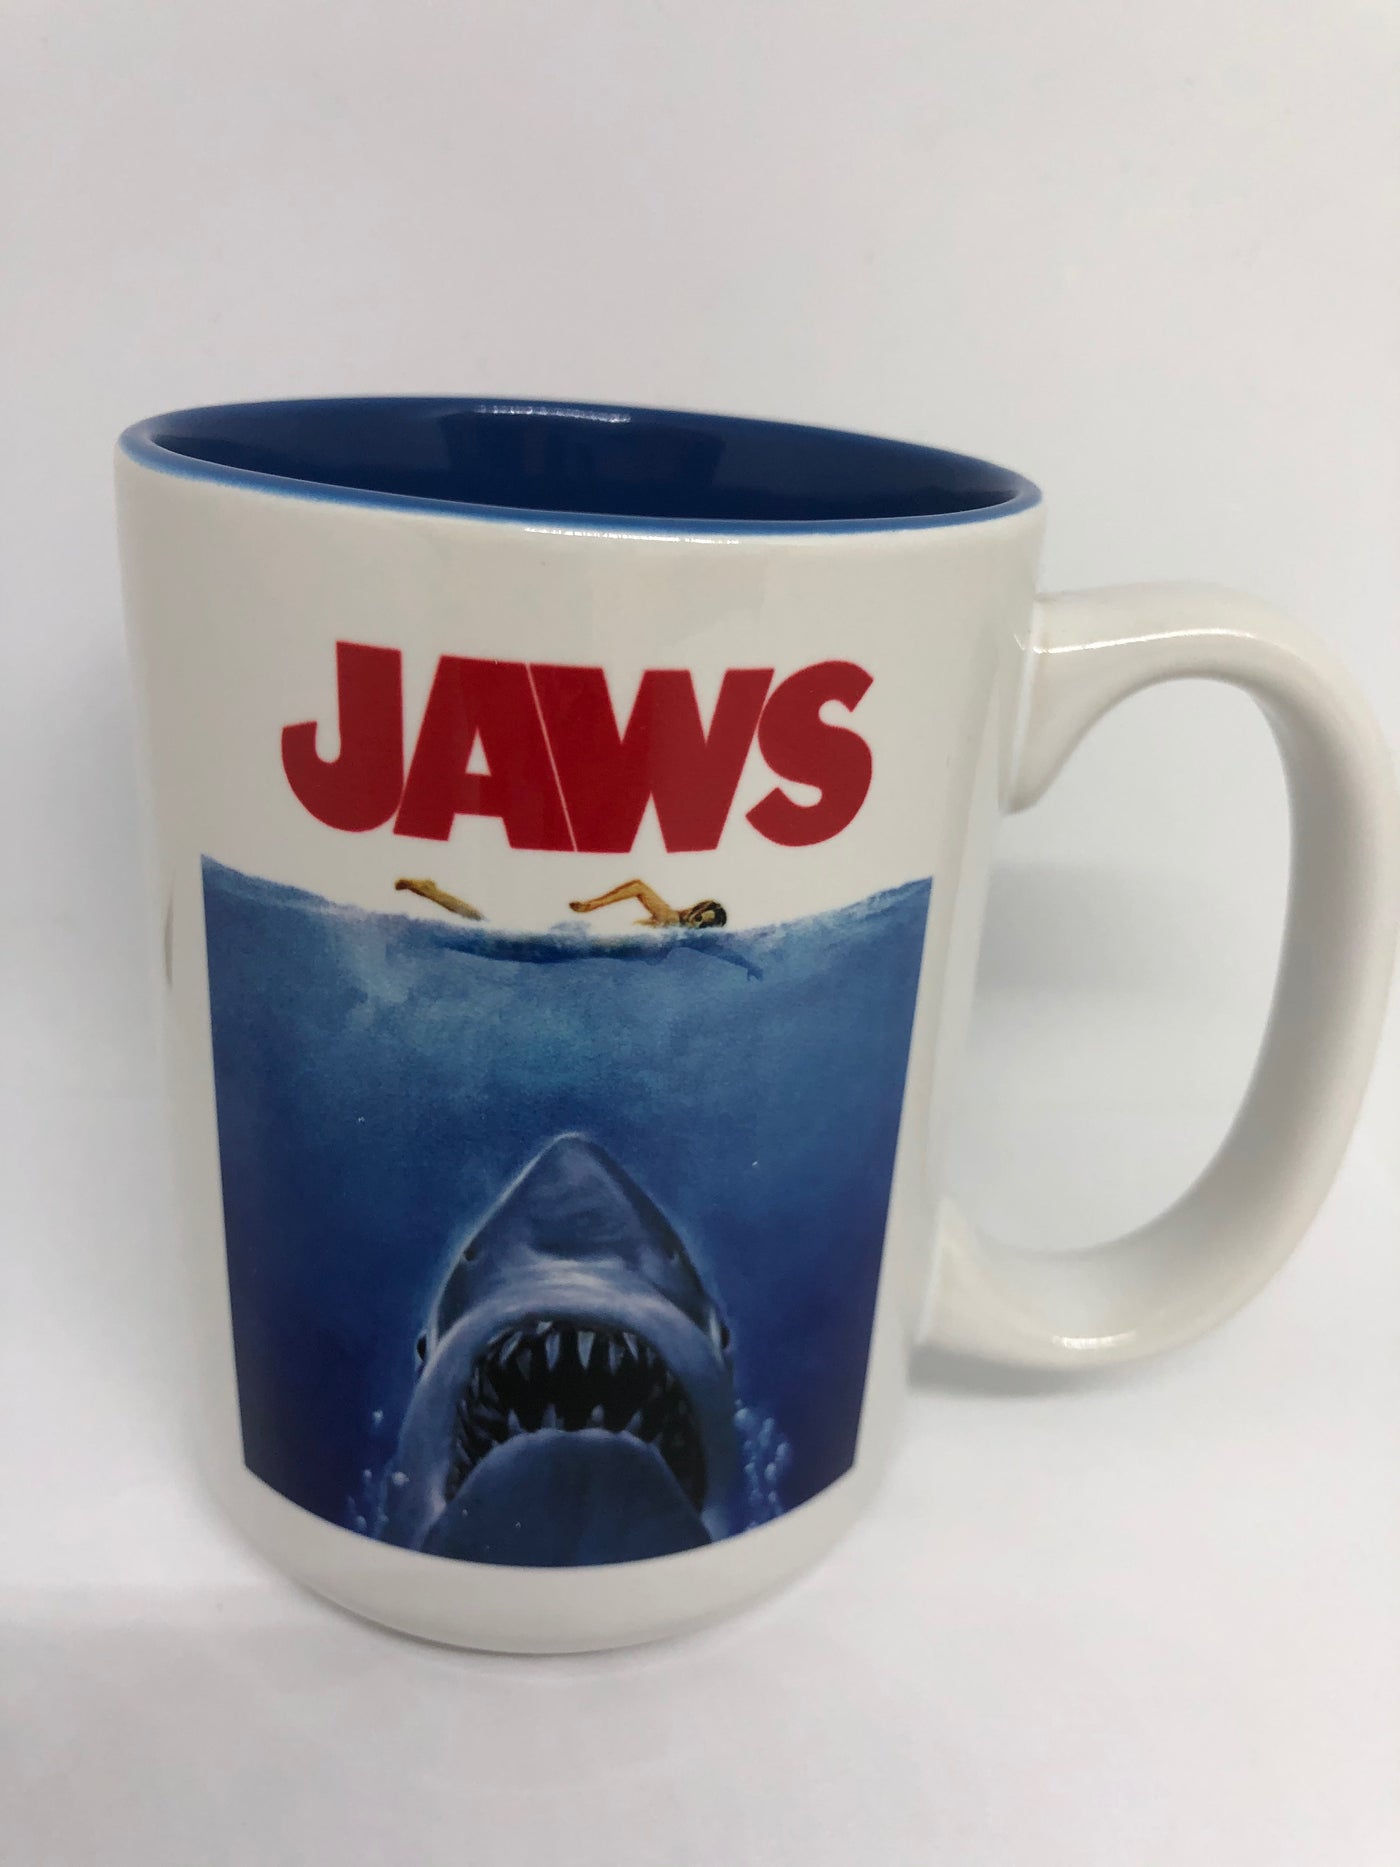 Universal Studios Jaws the Movie Ceramic Coffee Mug New